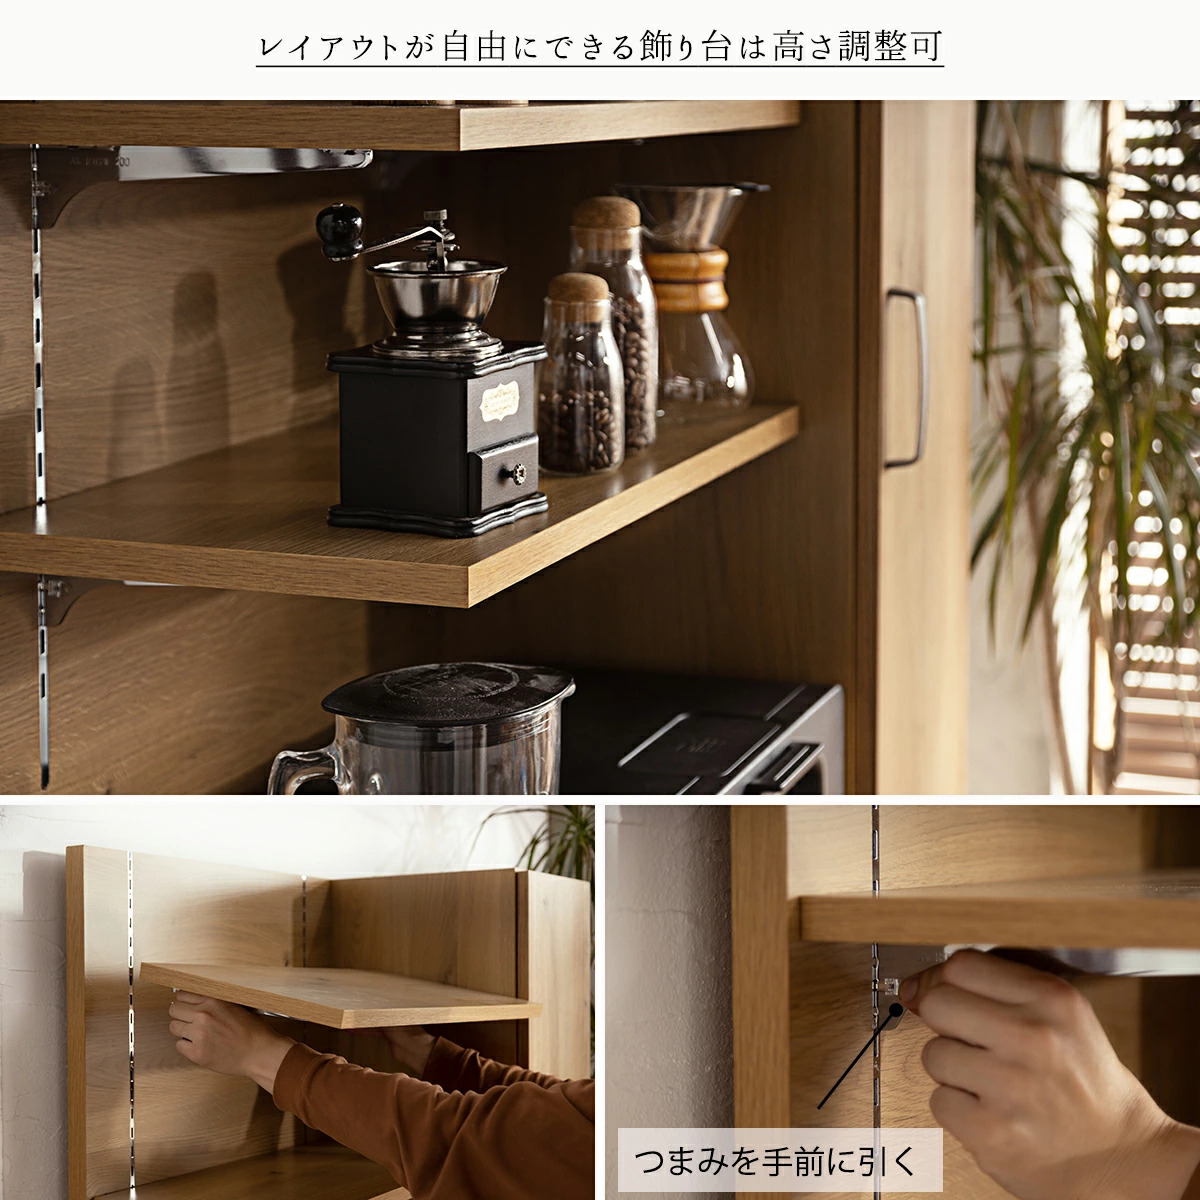 F00223_キッチンボード おしゃれ 食器棚 幅90 木製 ハイタイプ 日本製 ダイニングボード レンジボード キッチン棚 レンジ台 ナチュラル  オーク コンパ